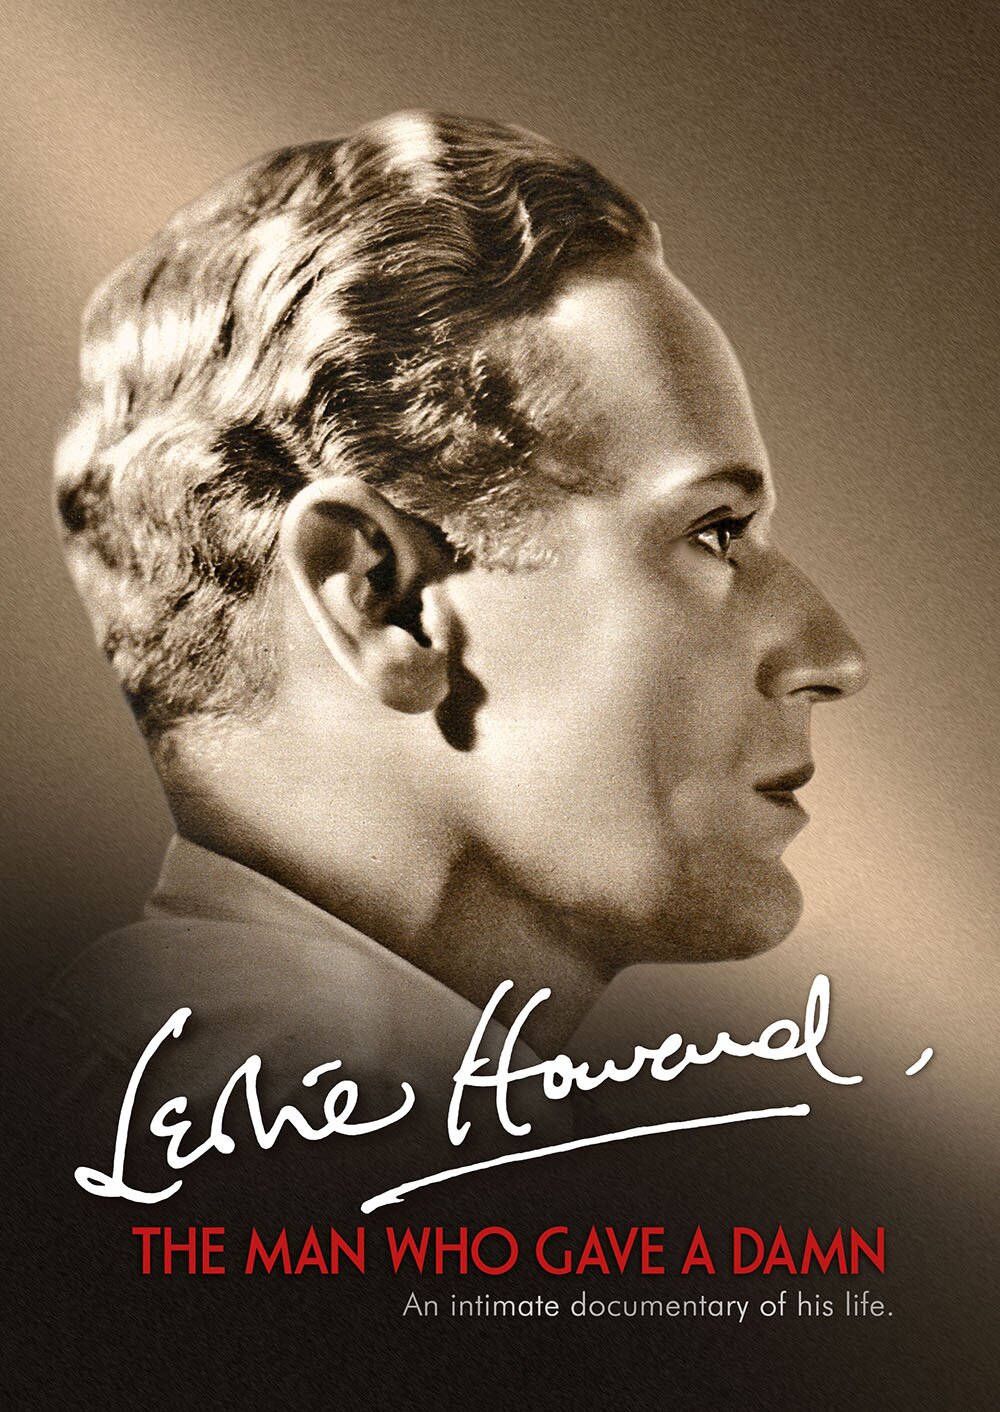 Leslie Howard: The Man Who Gave a Damn 